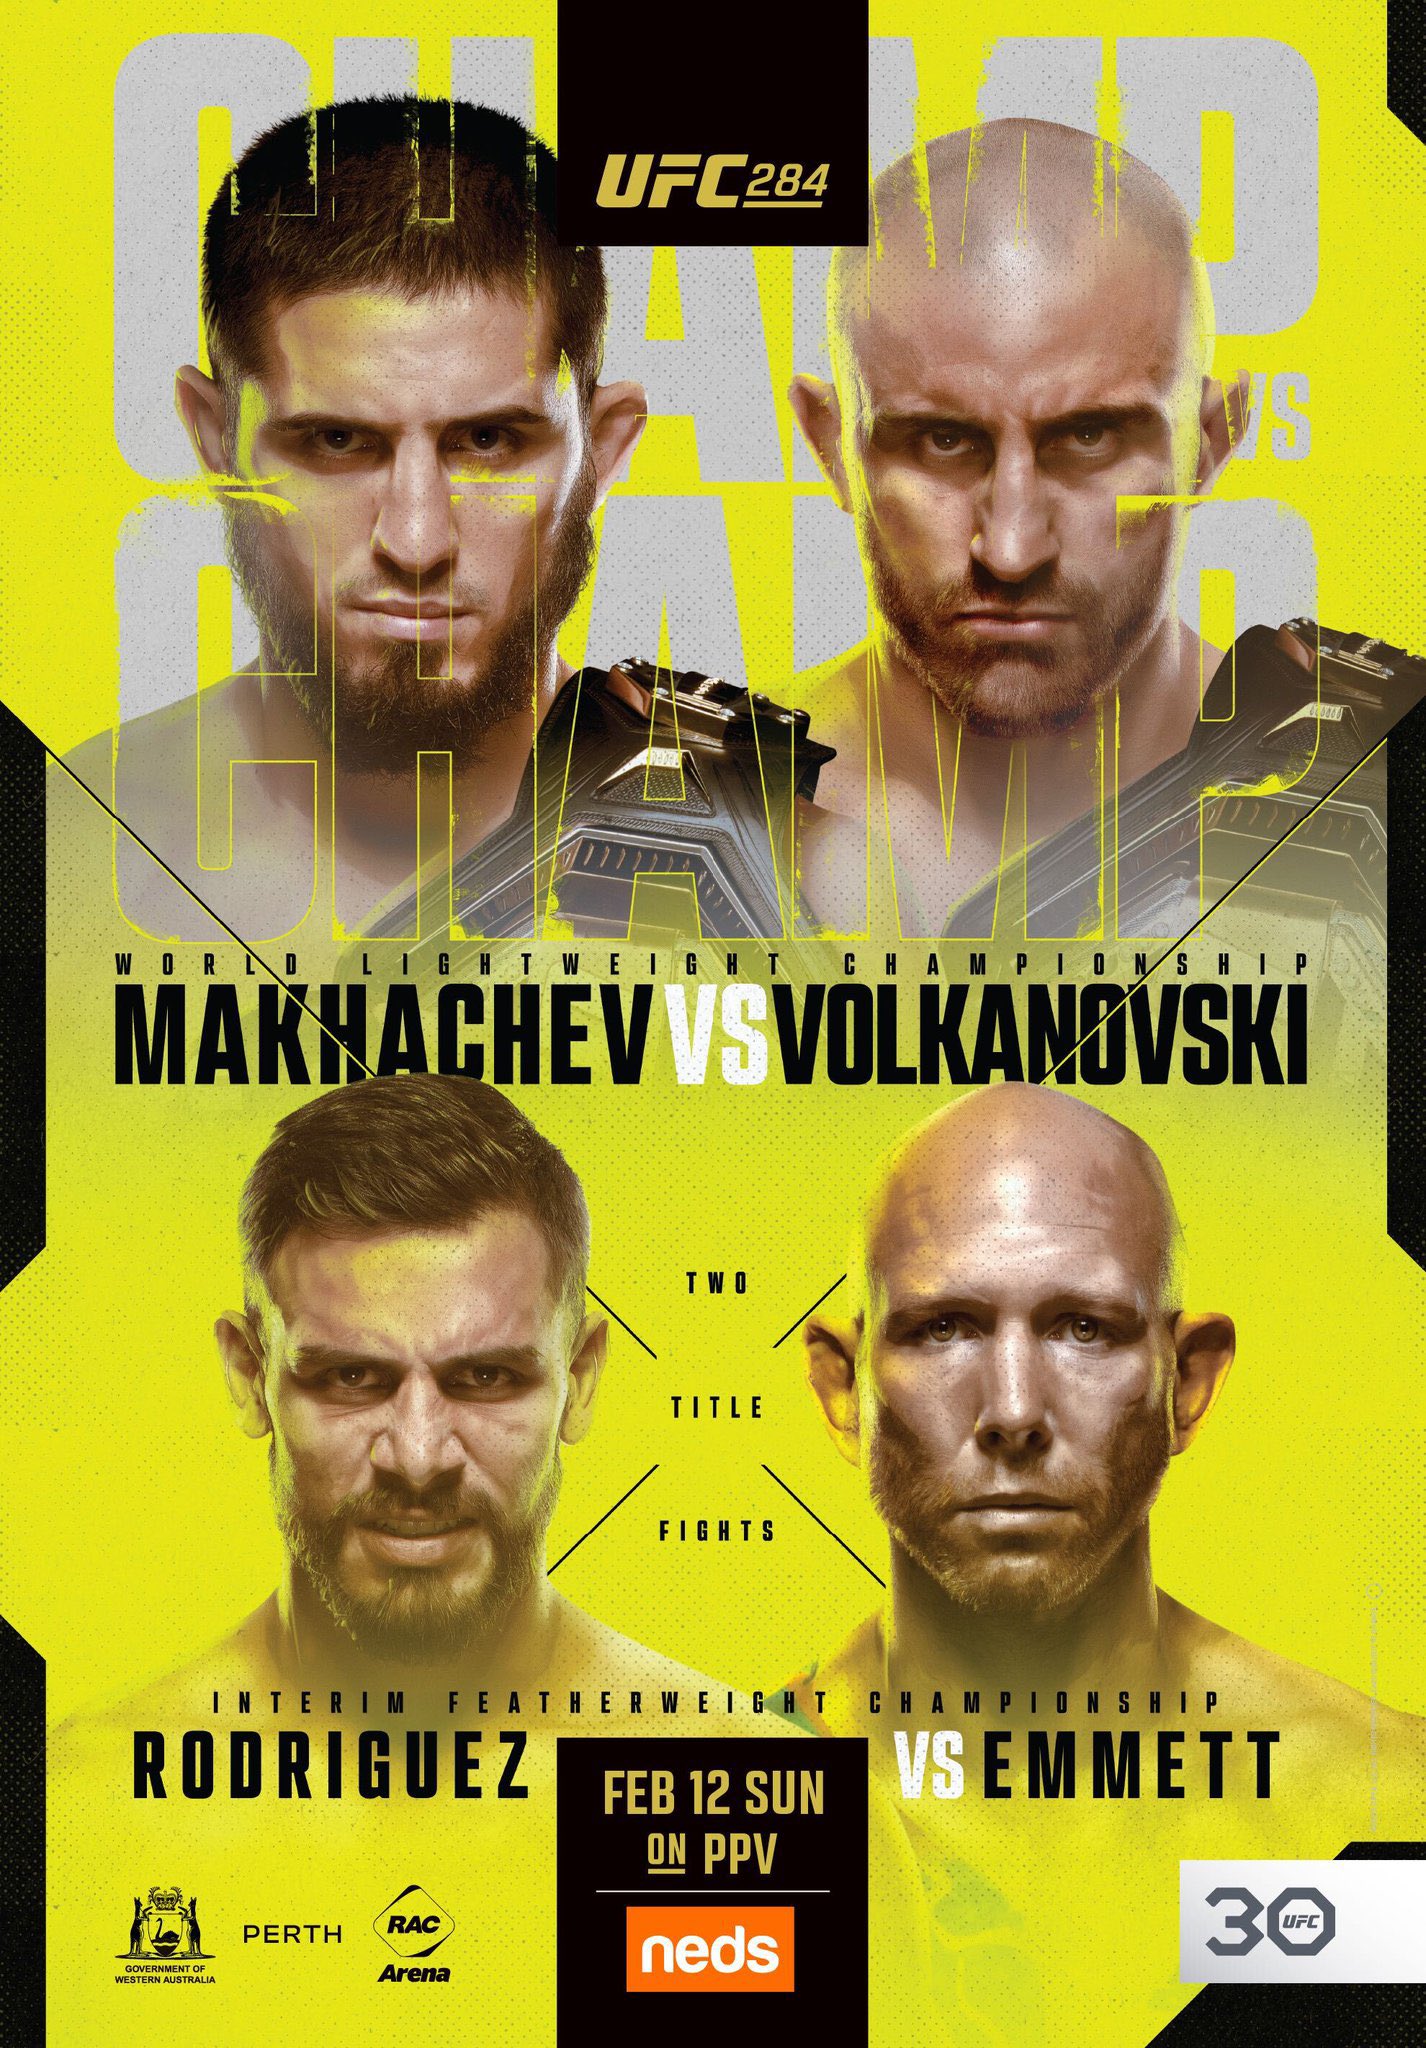 Pejuang mana yang bersaing di UFC 284?  Pembaruan lebih lanjut tentang kartu Islam Makhachev vs Alexander Volkanovski